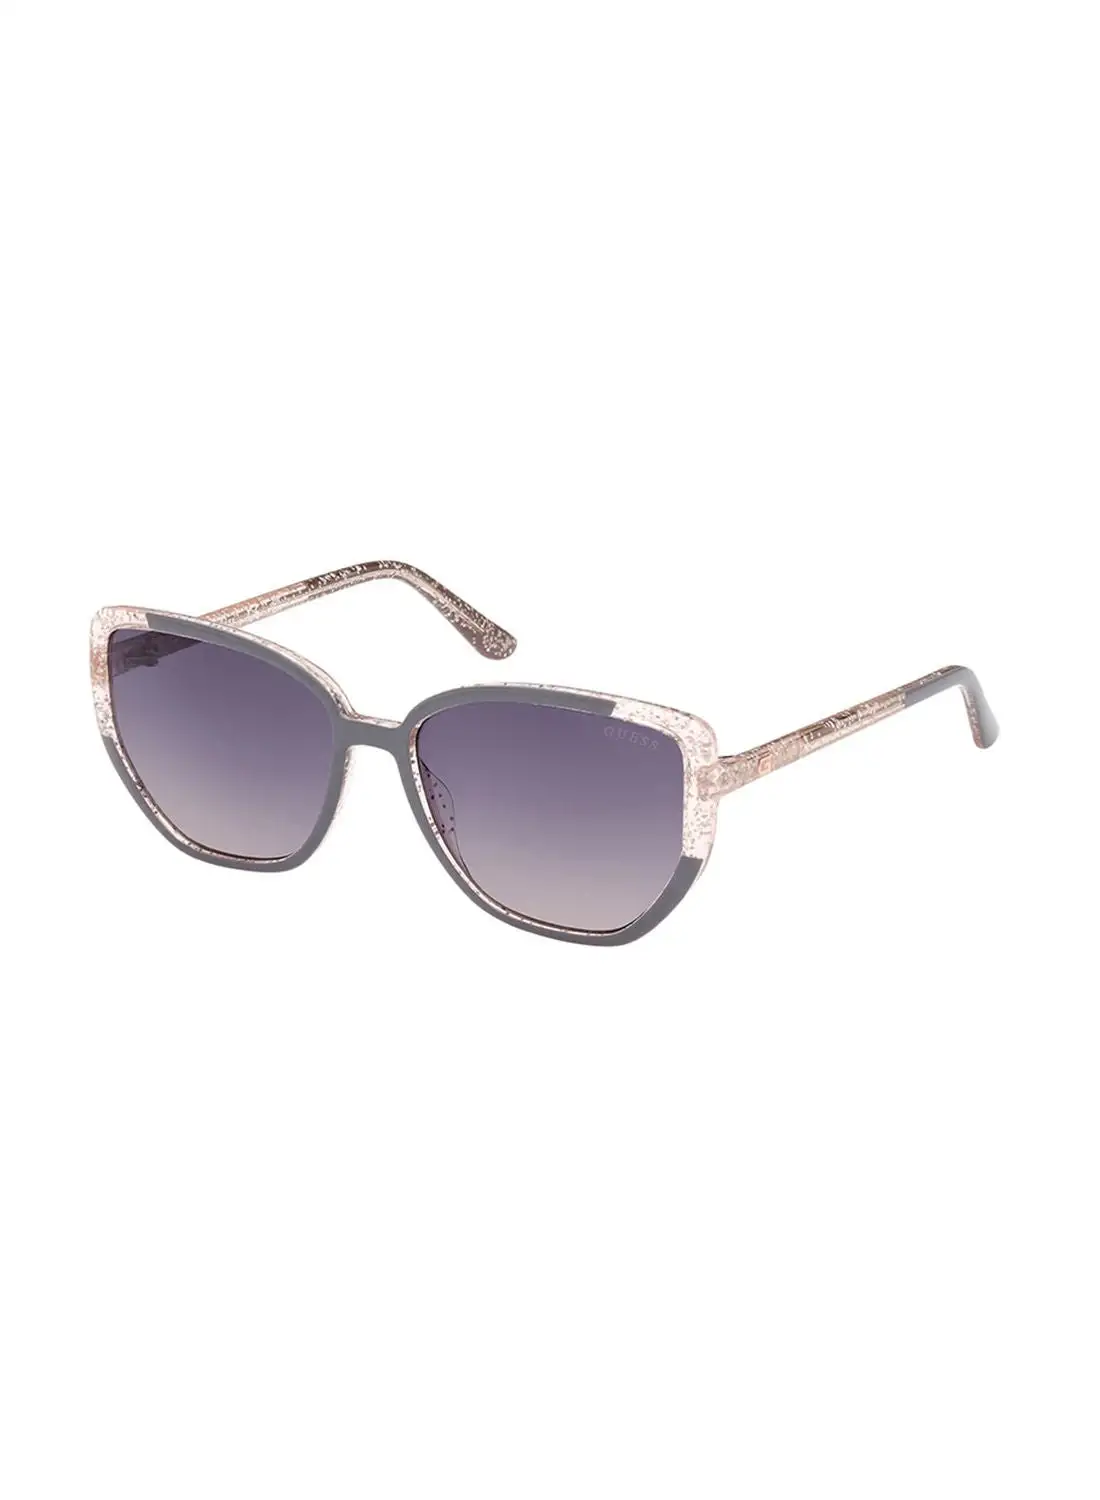 GUESS Sunglasses For Women GU788220B55